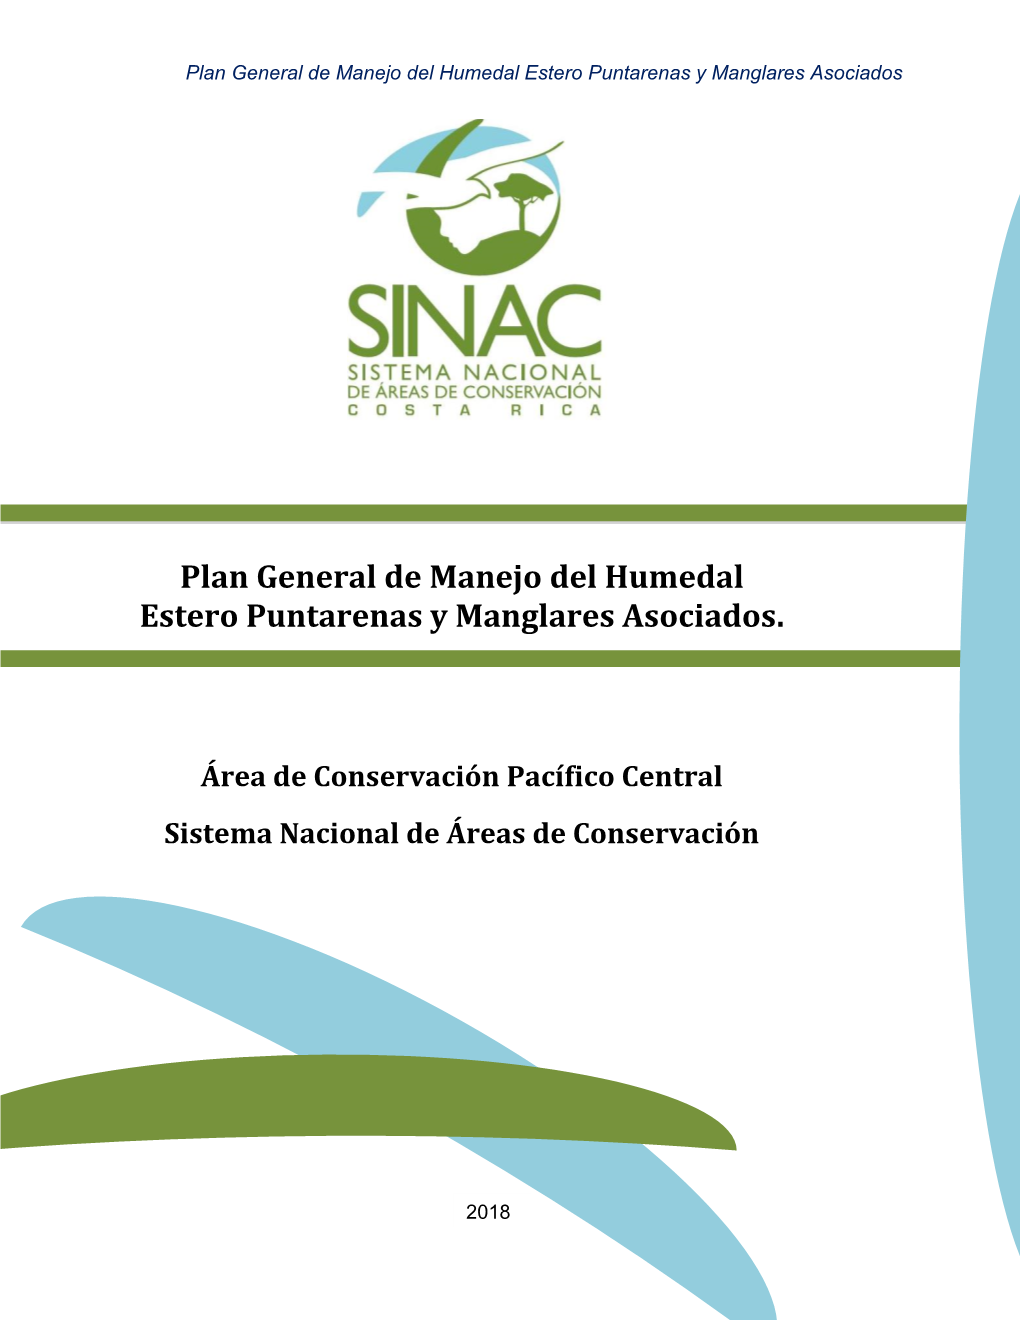 Humedal Estero Puntarenas Y Manglares Asociados